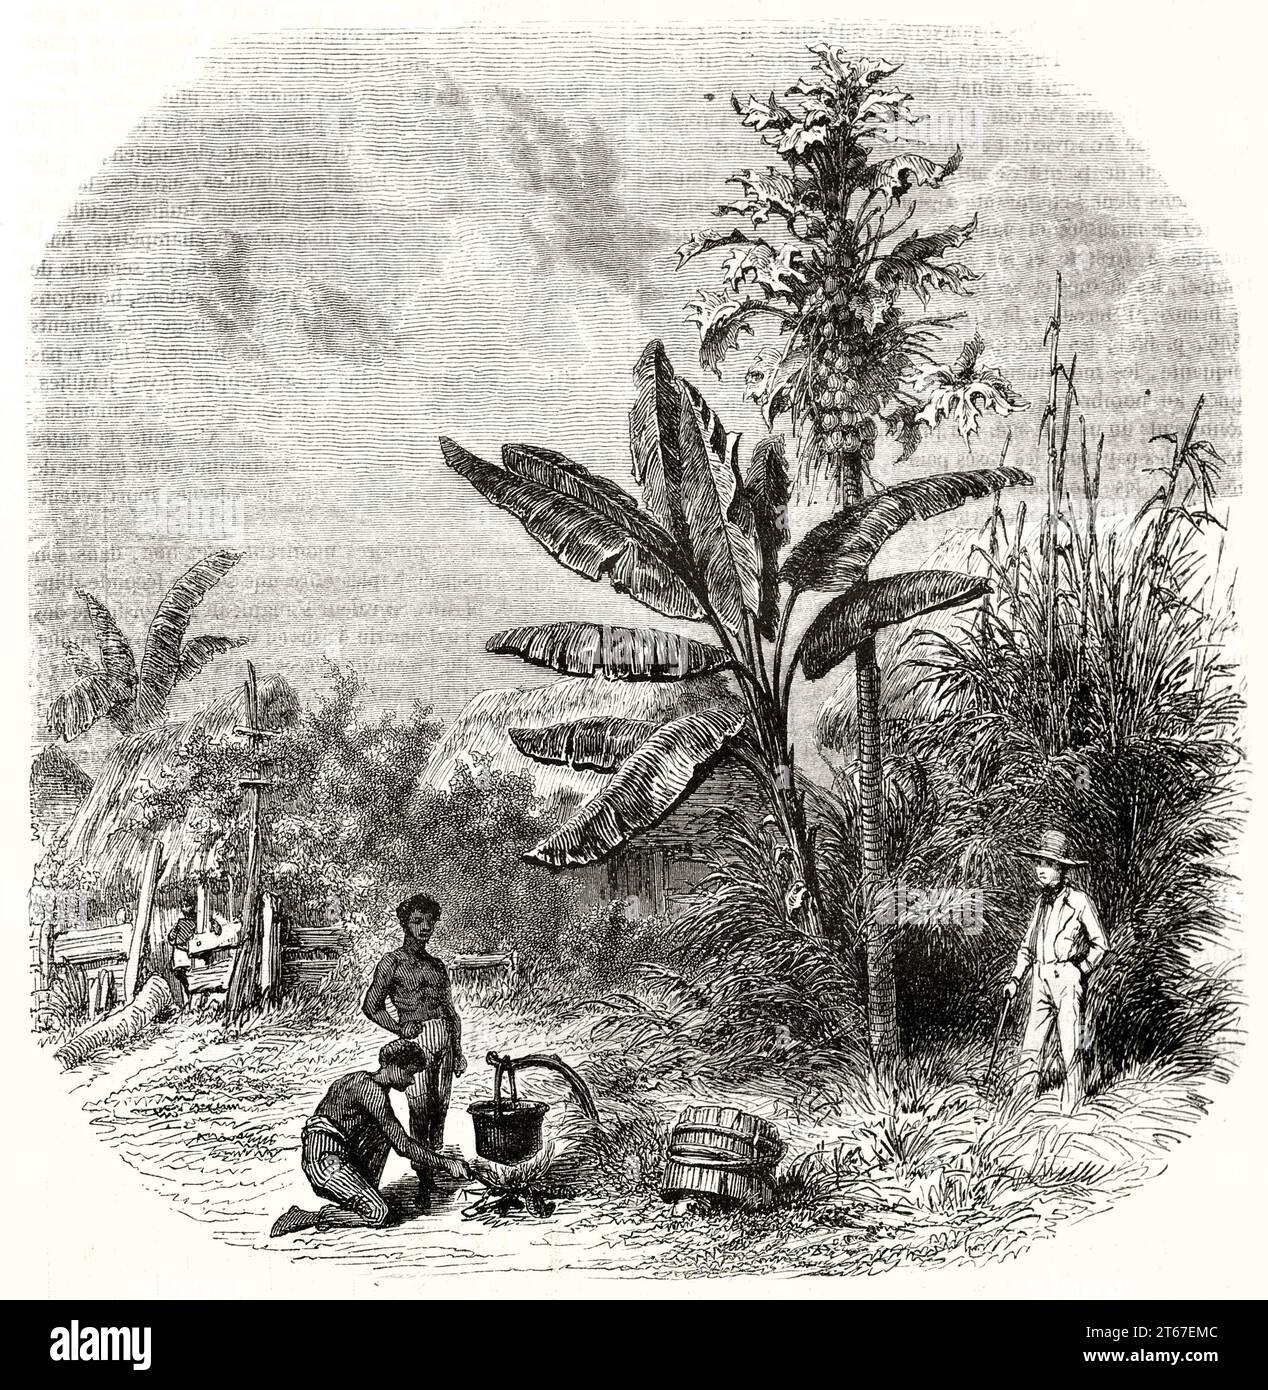 Illustration ancienne de la vie en Guadeloupe, Iles sous le vent. Par Girardet d'après Bendemann, publ. Sur magasin pittoresque, Paris, 1851 Banque D'Images